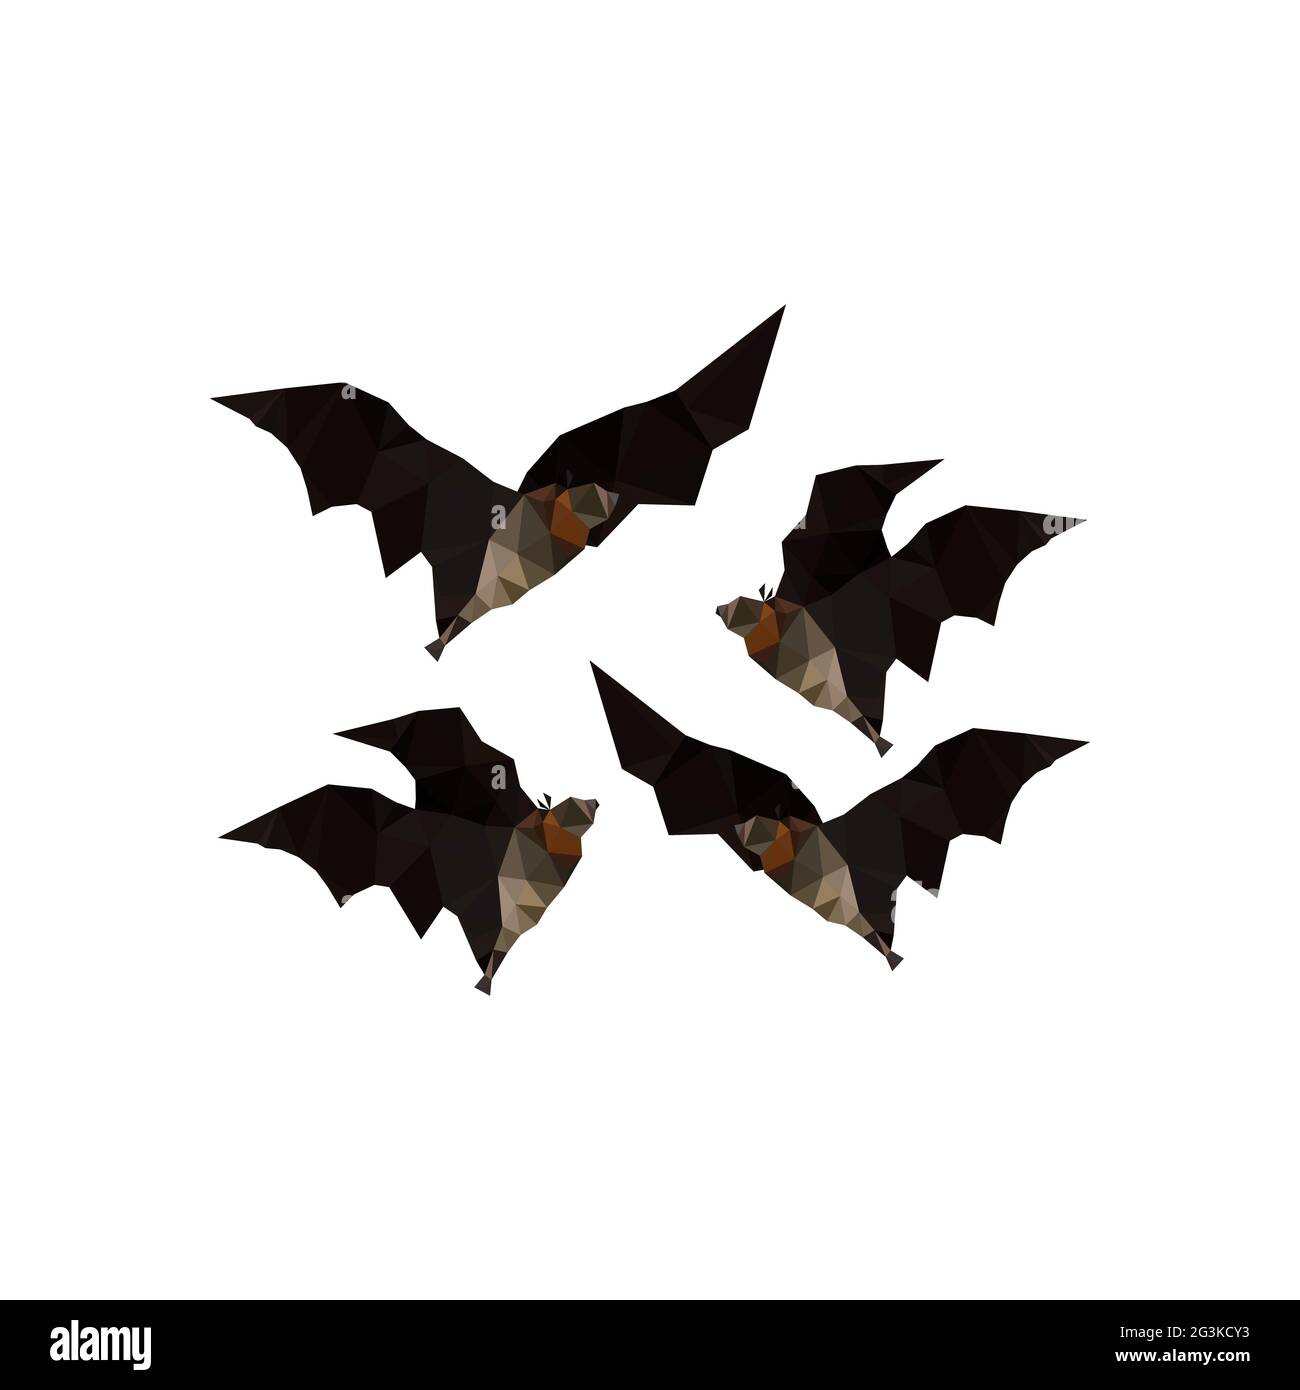 Illustration de chauves-souris volantes à l'origami Banque D'Images